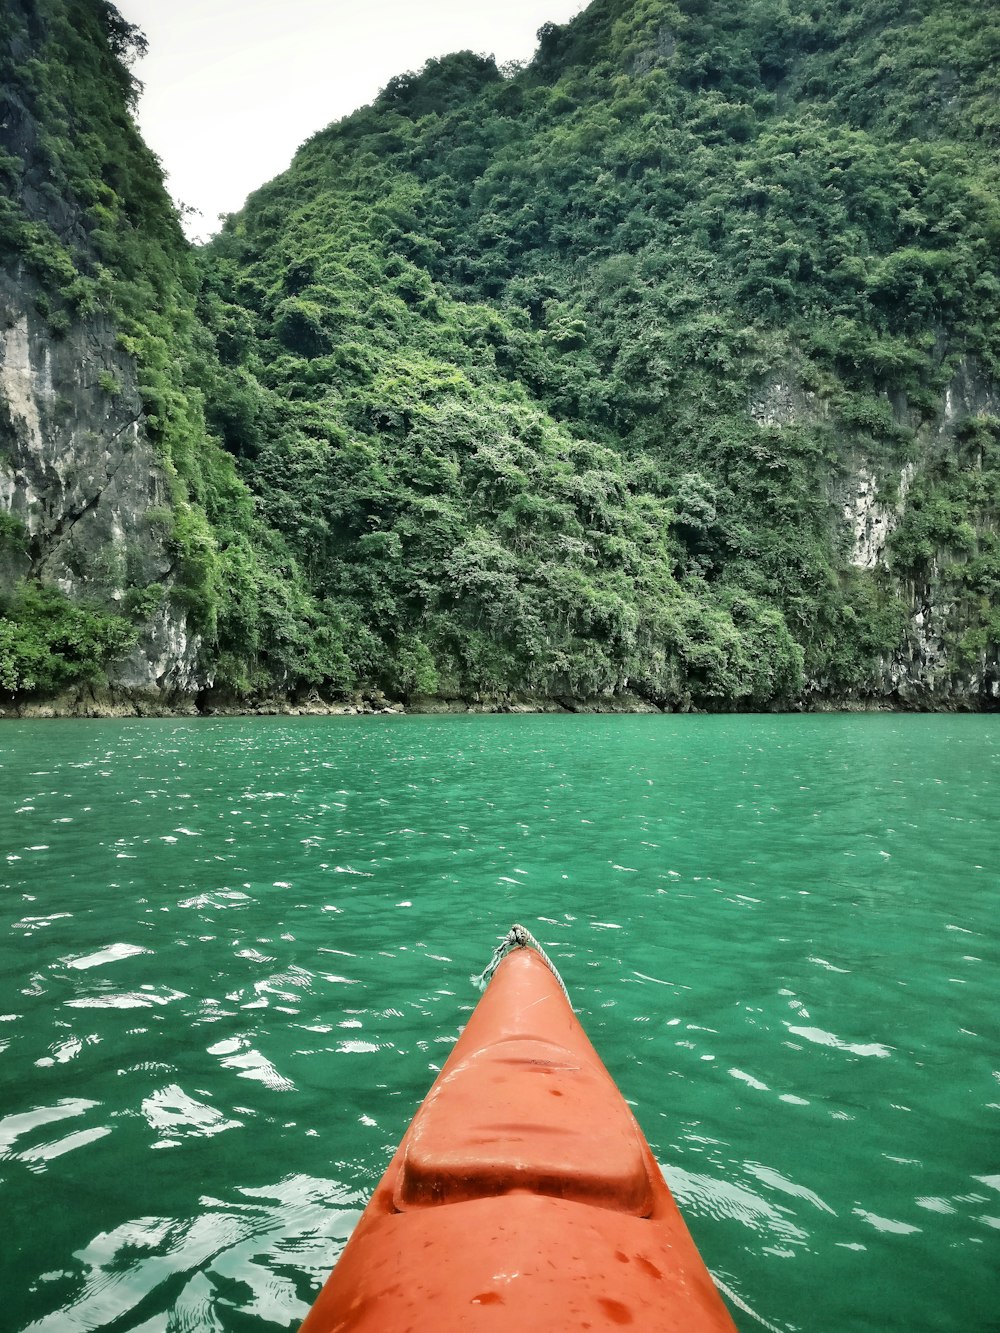 orange kayak on green body of water viewing mountain